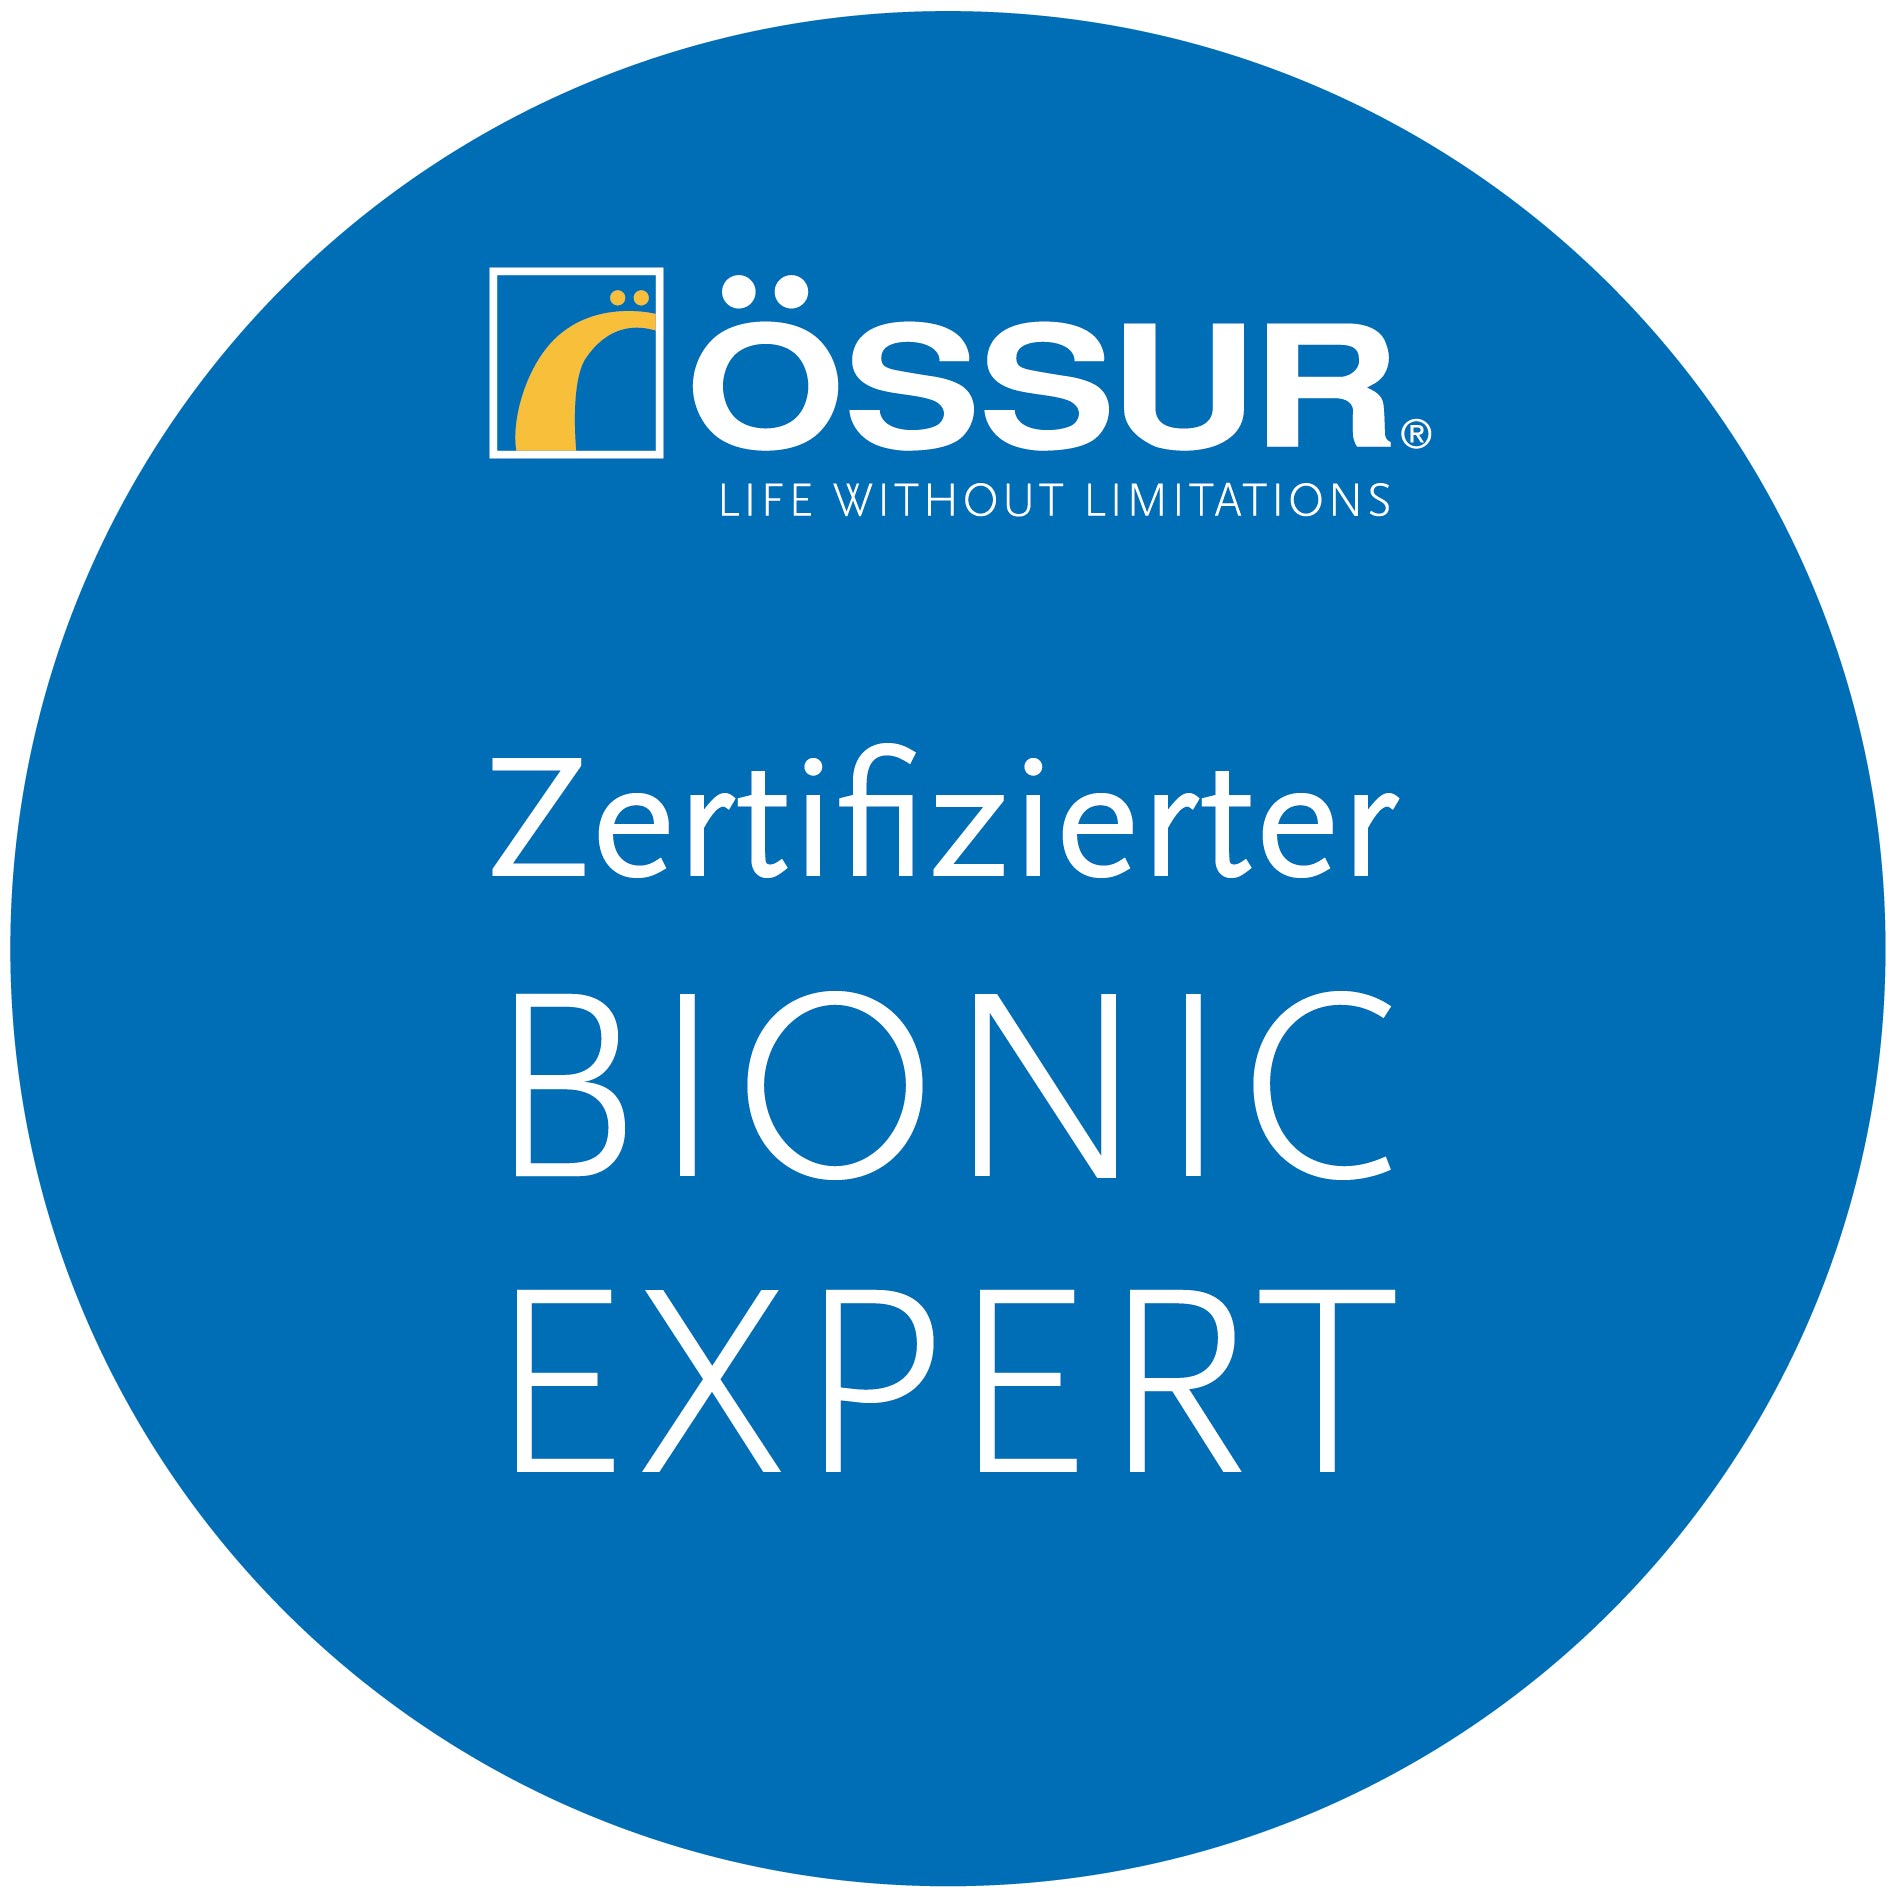 Oessur zertifiziertes Bionic Expert Zentraum - Plakette - copyright by Ossur